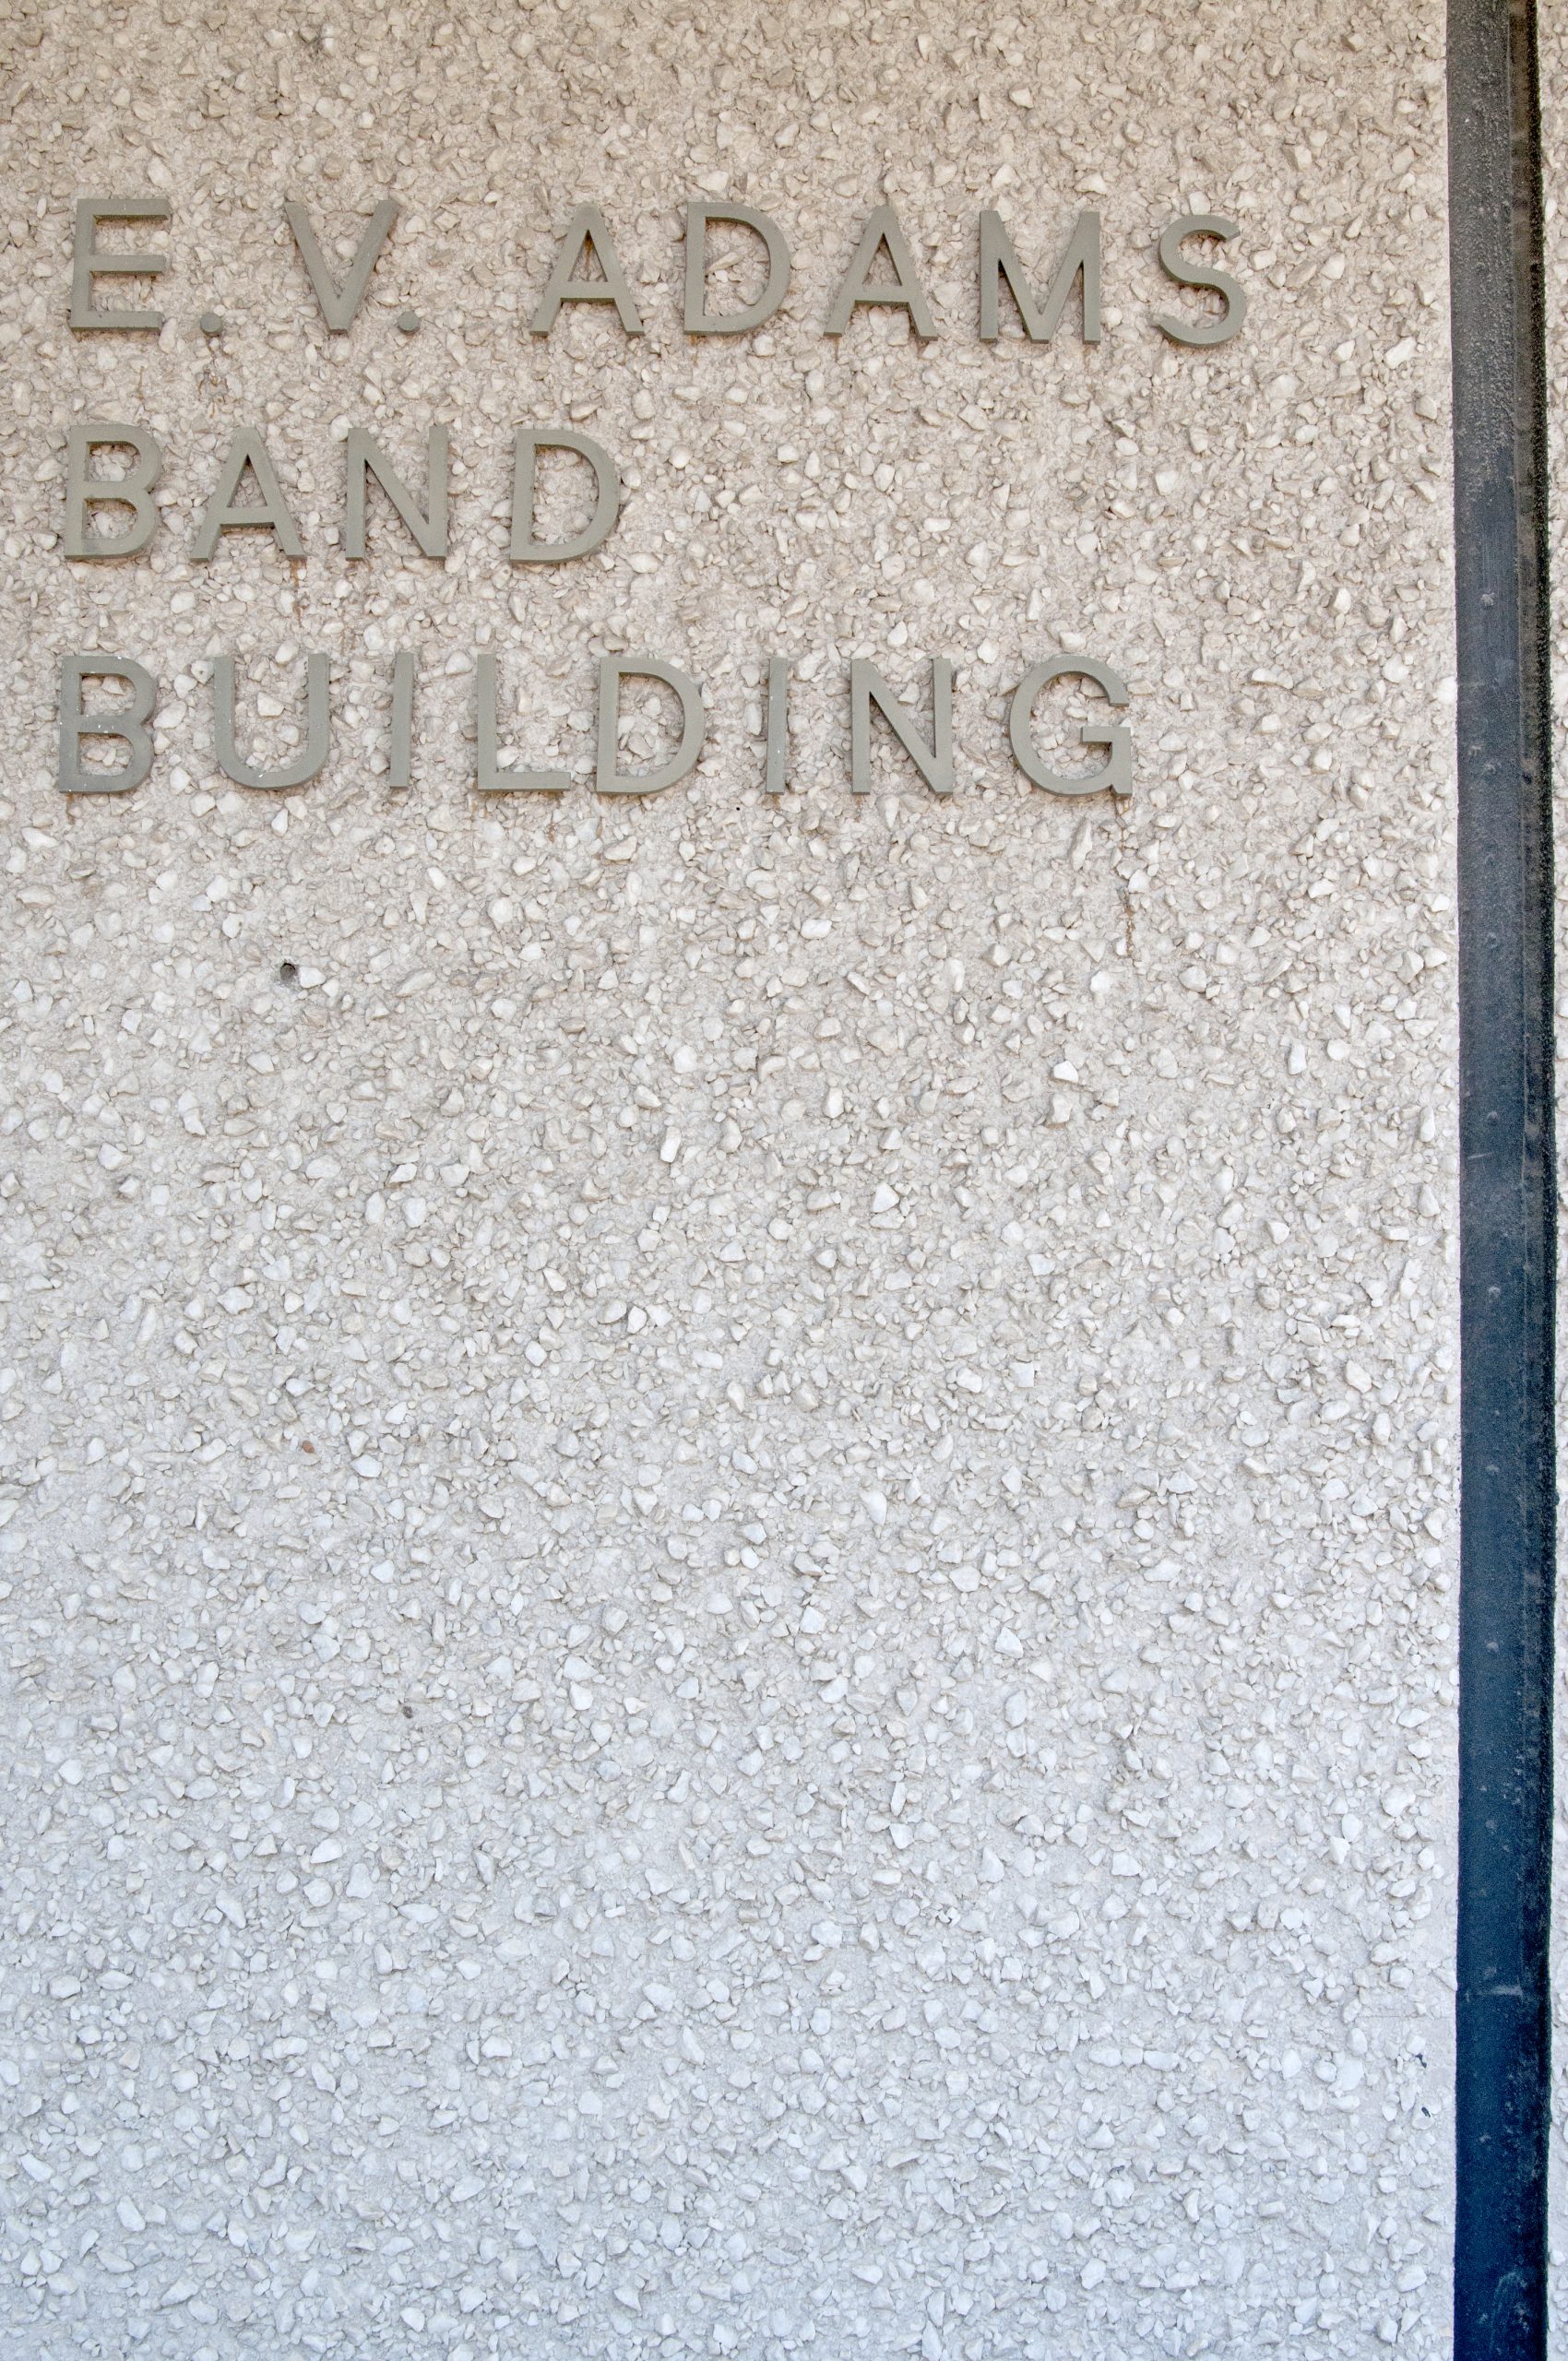 Band+Hall+Building